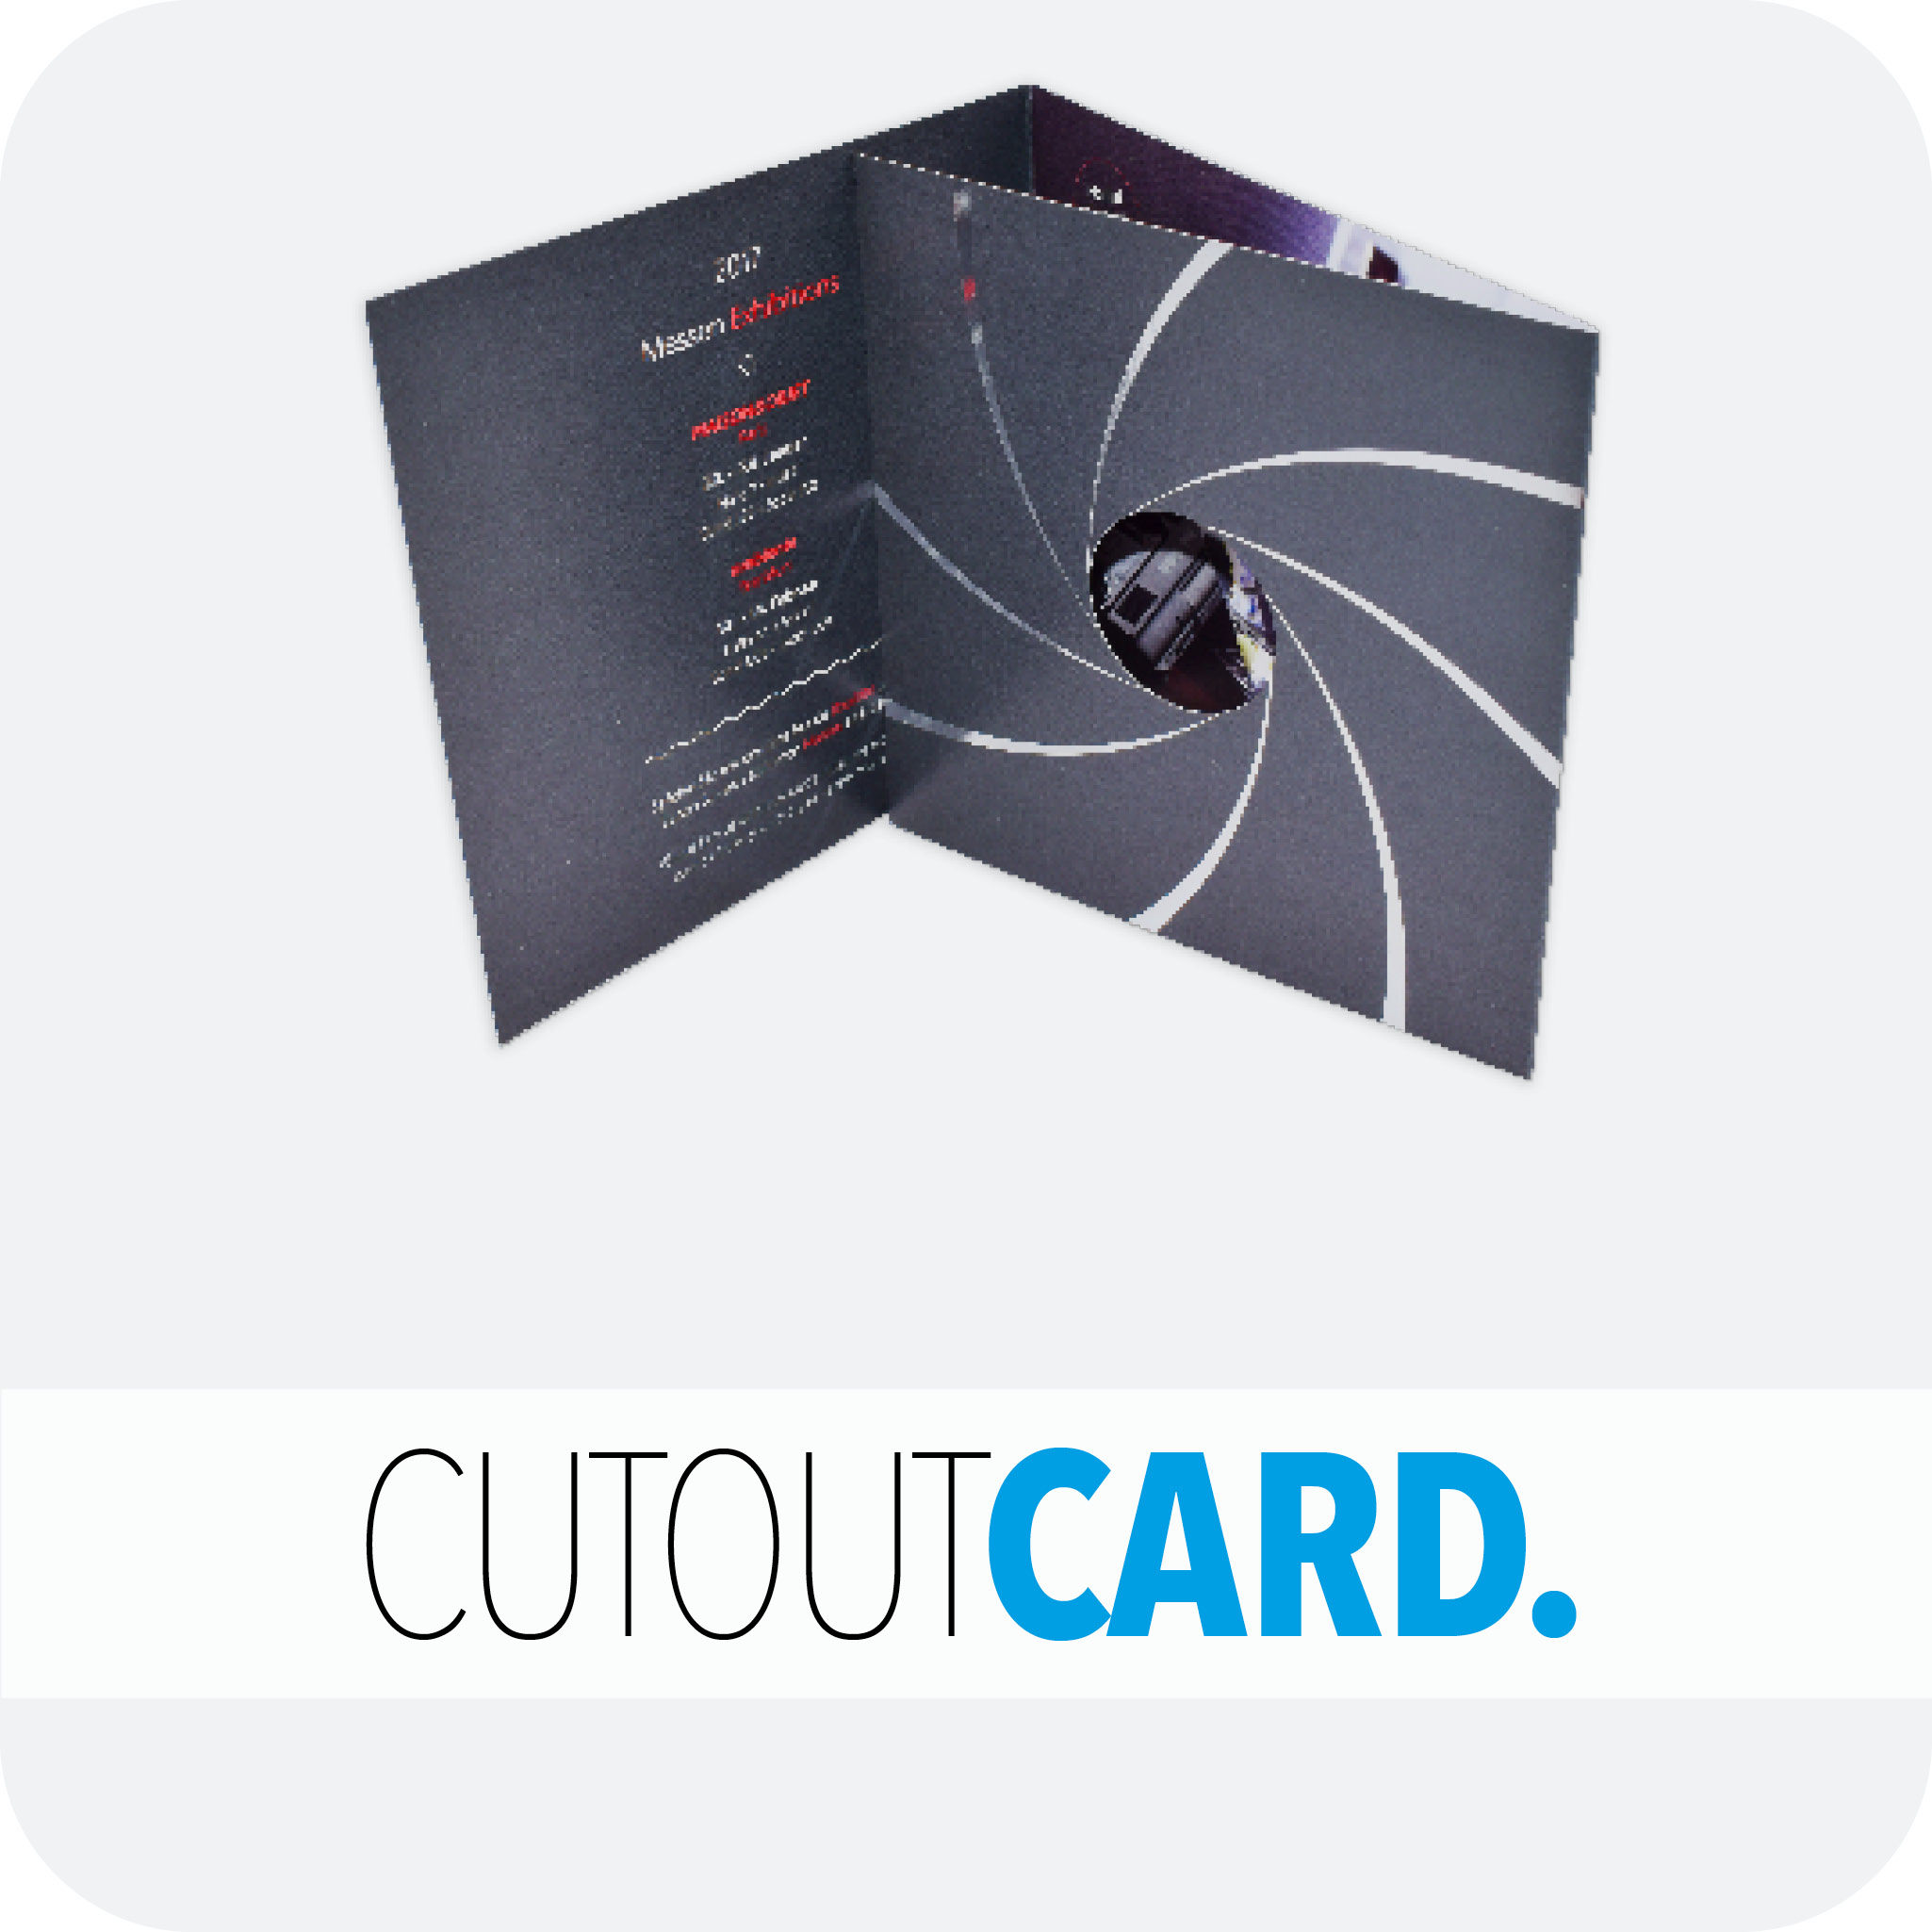 Cutout card